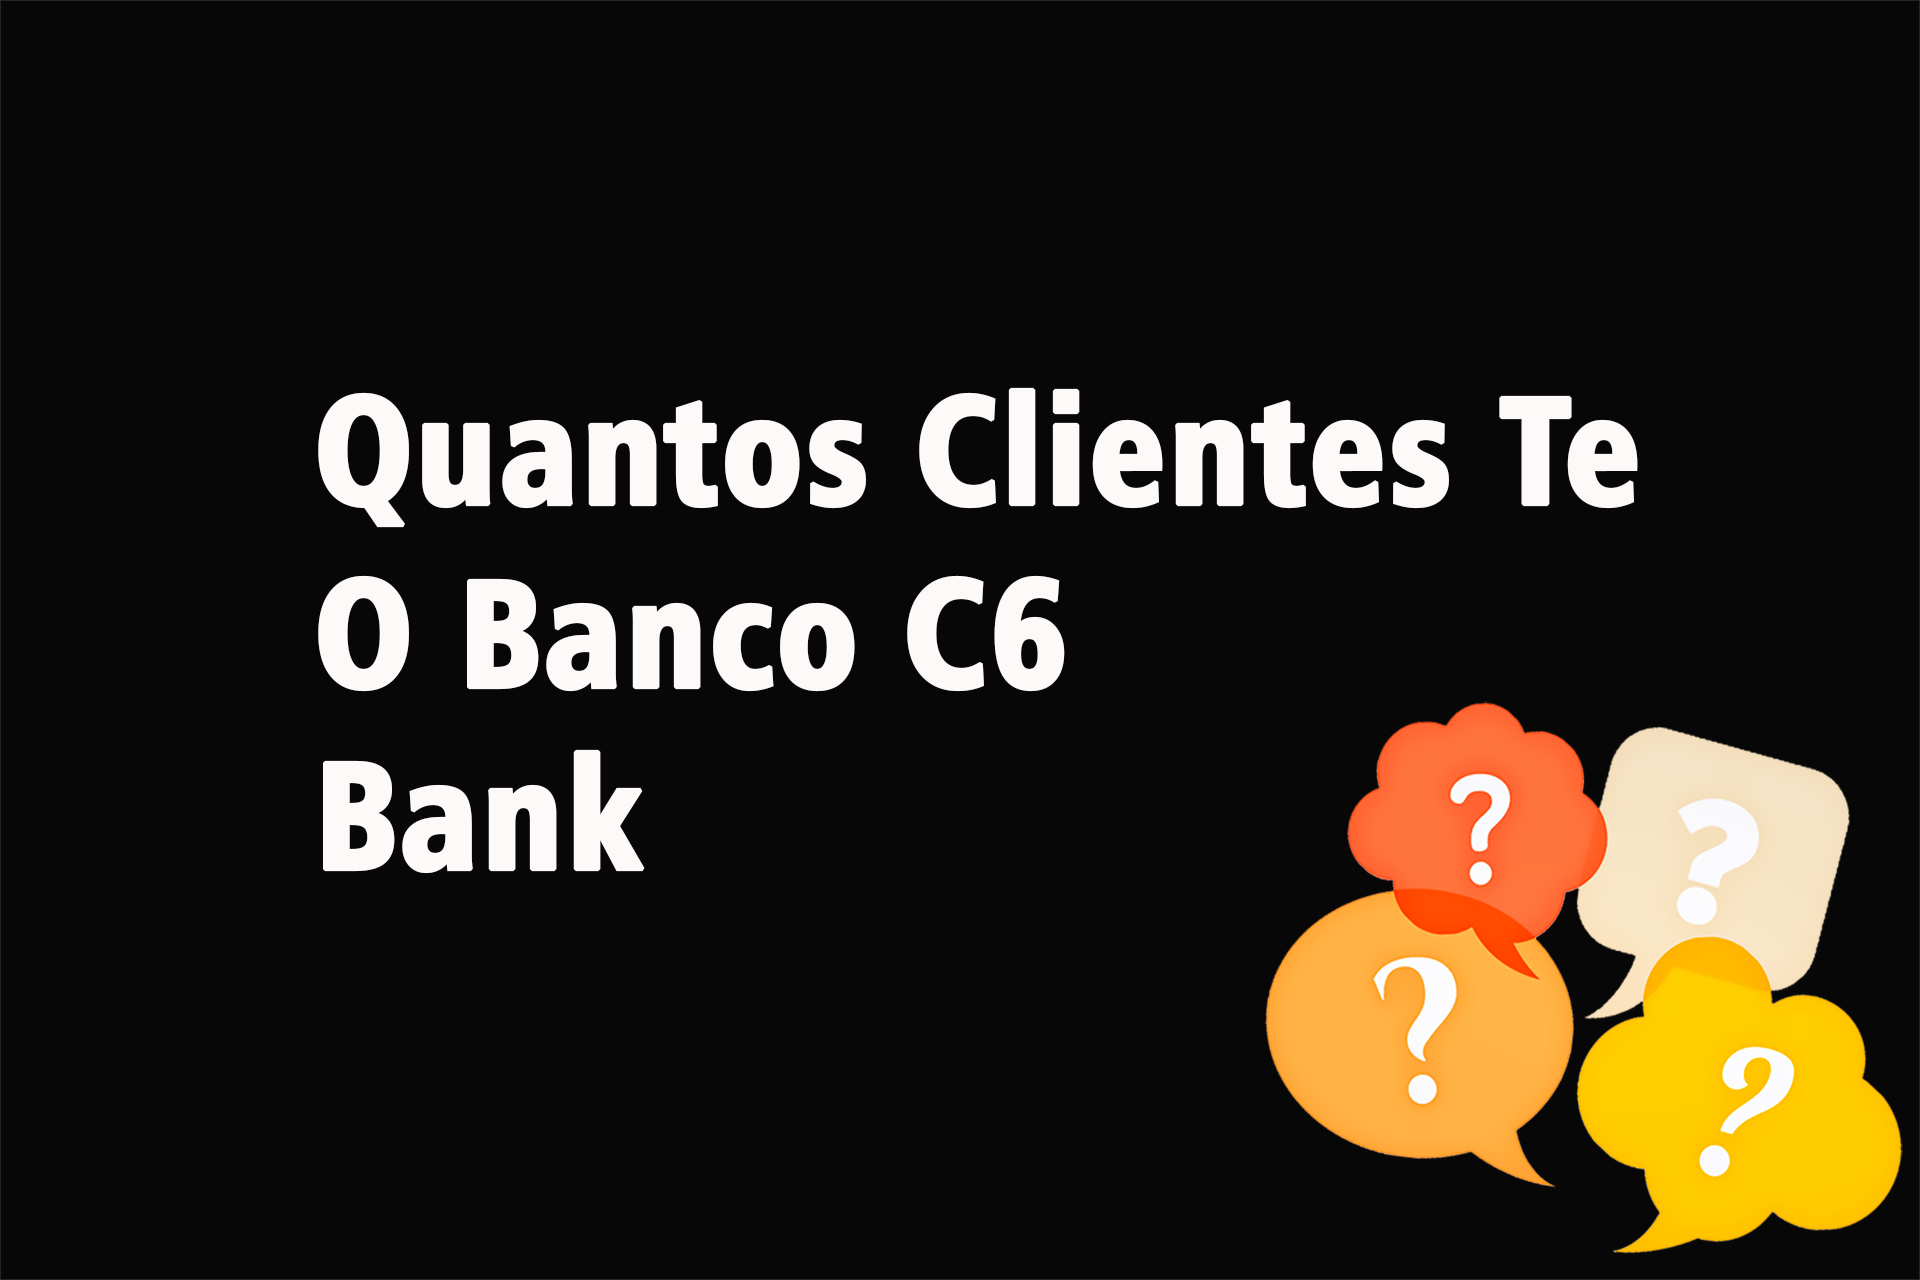 Quantos Clientes Tem o Banco C6 Bank?